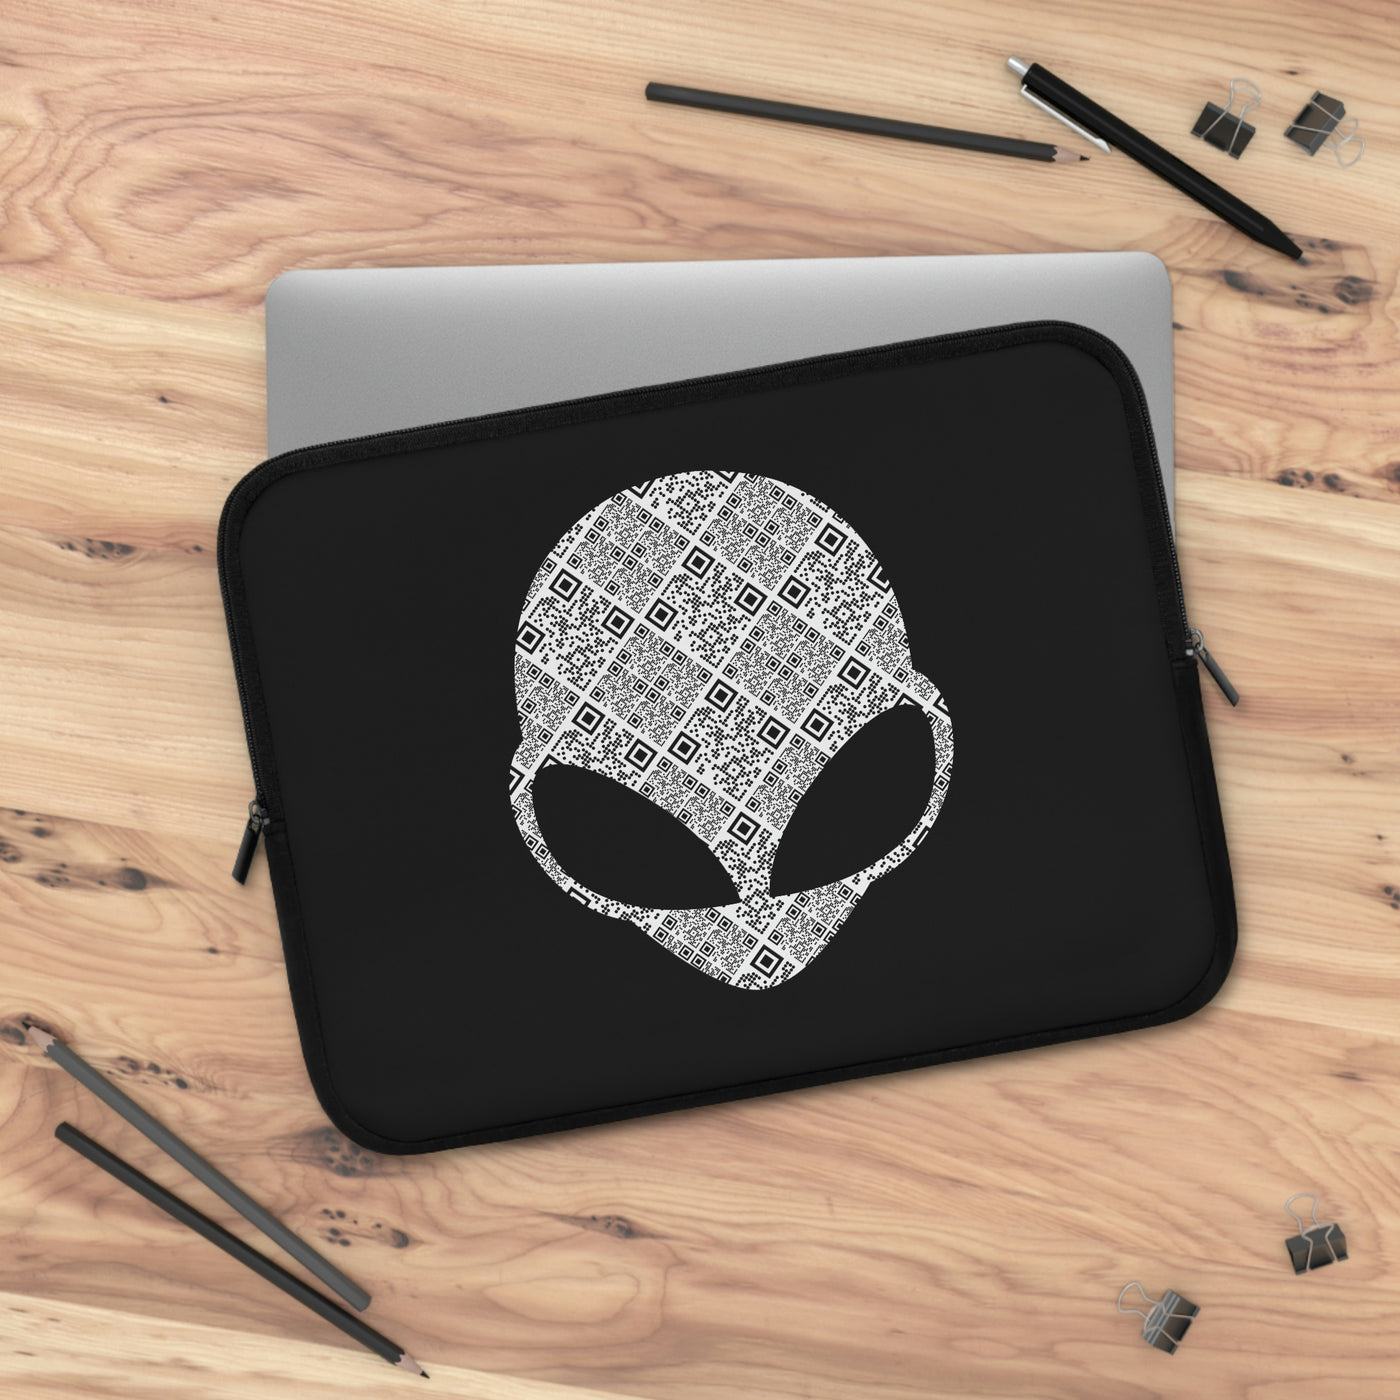 Alien Laptop Sleeve